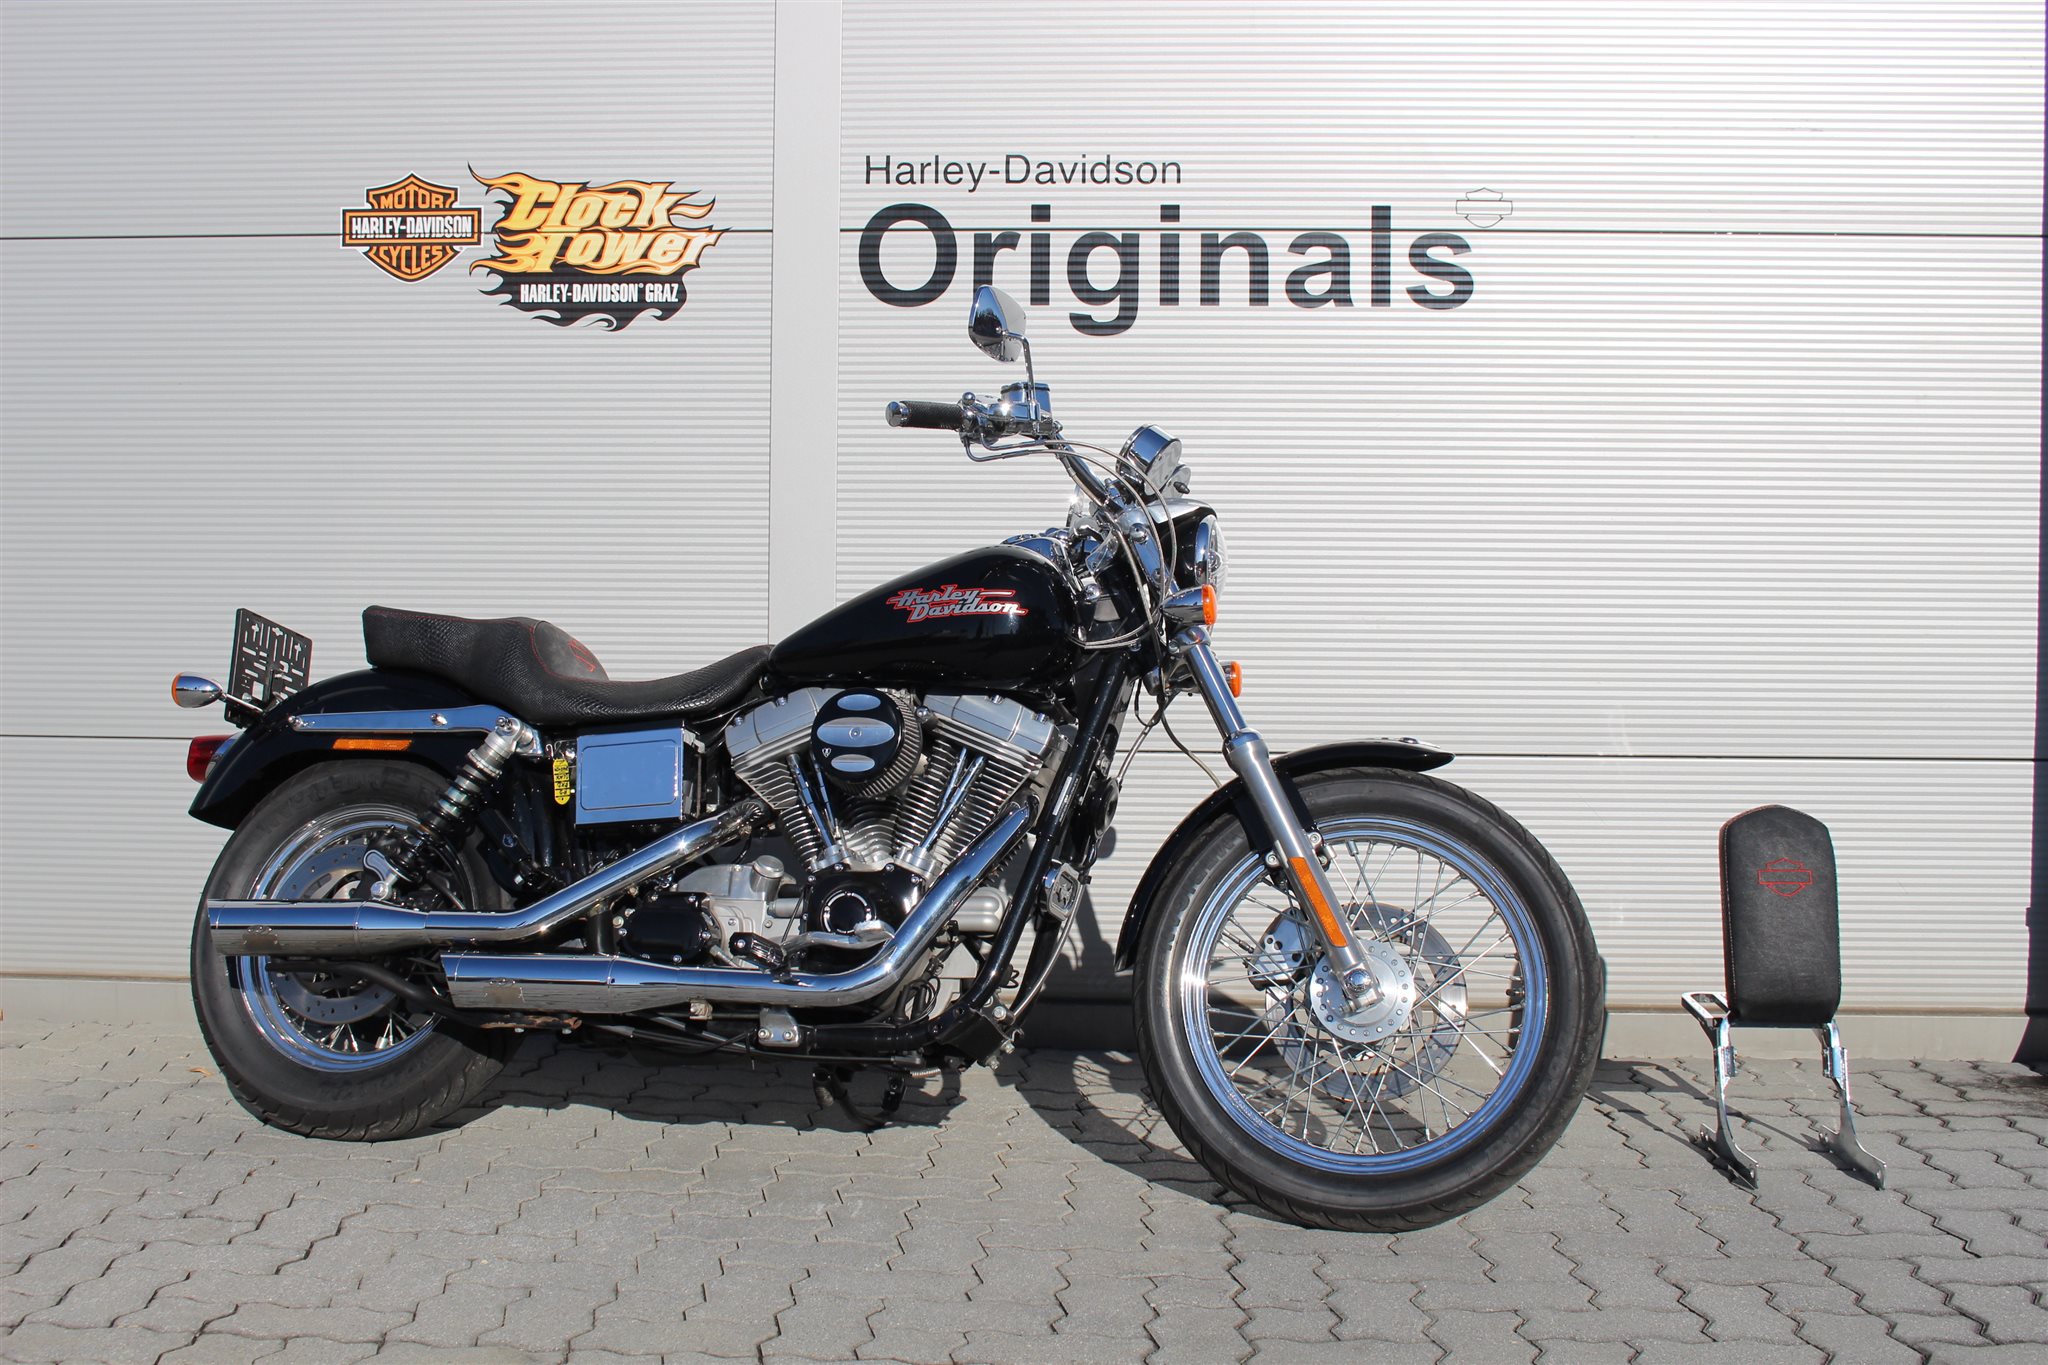 Gebrauchte Harley Davidson Dyna Super Glide Fxd Ez 2001 21 022 Km 13 990 00 Eur